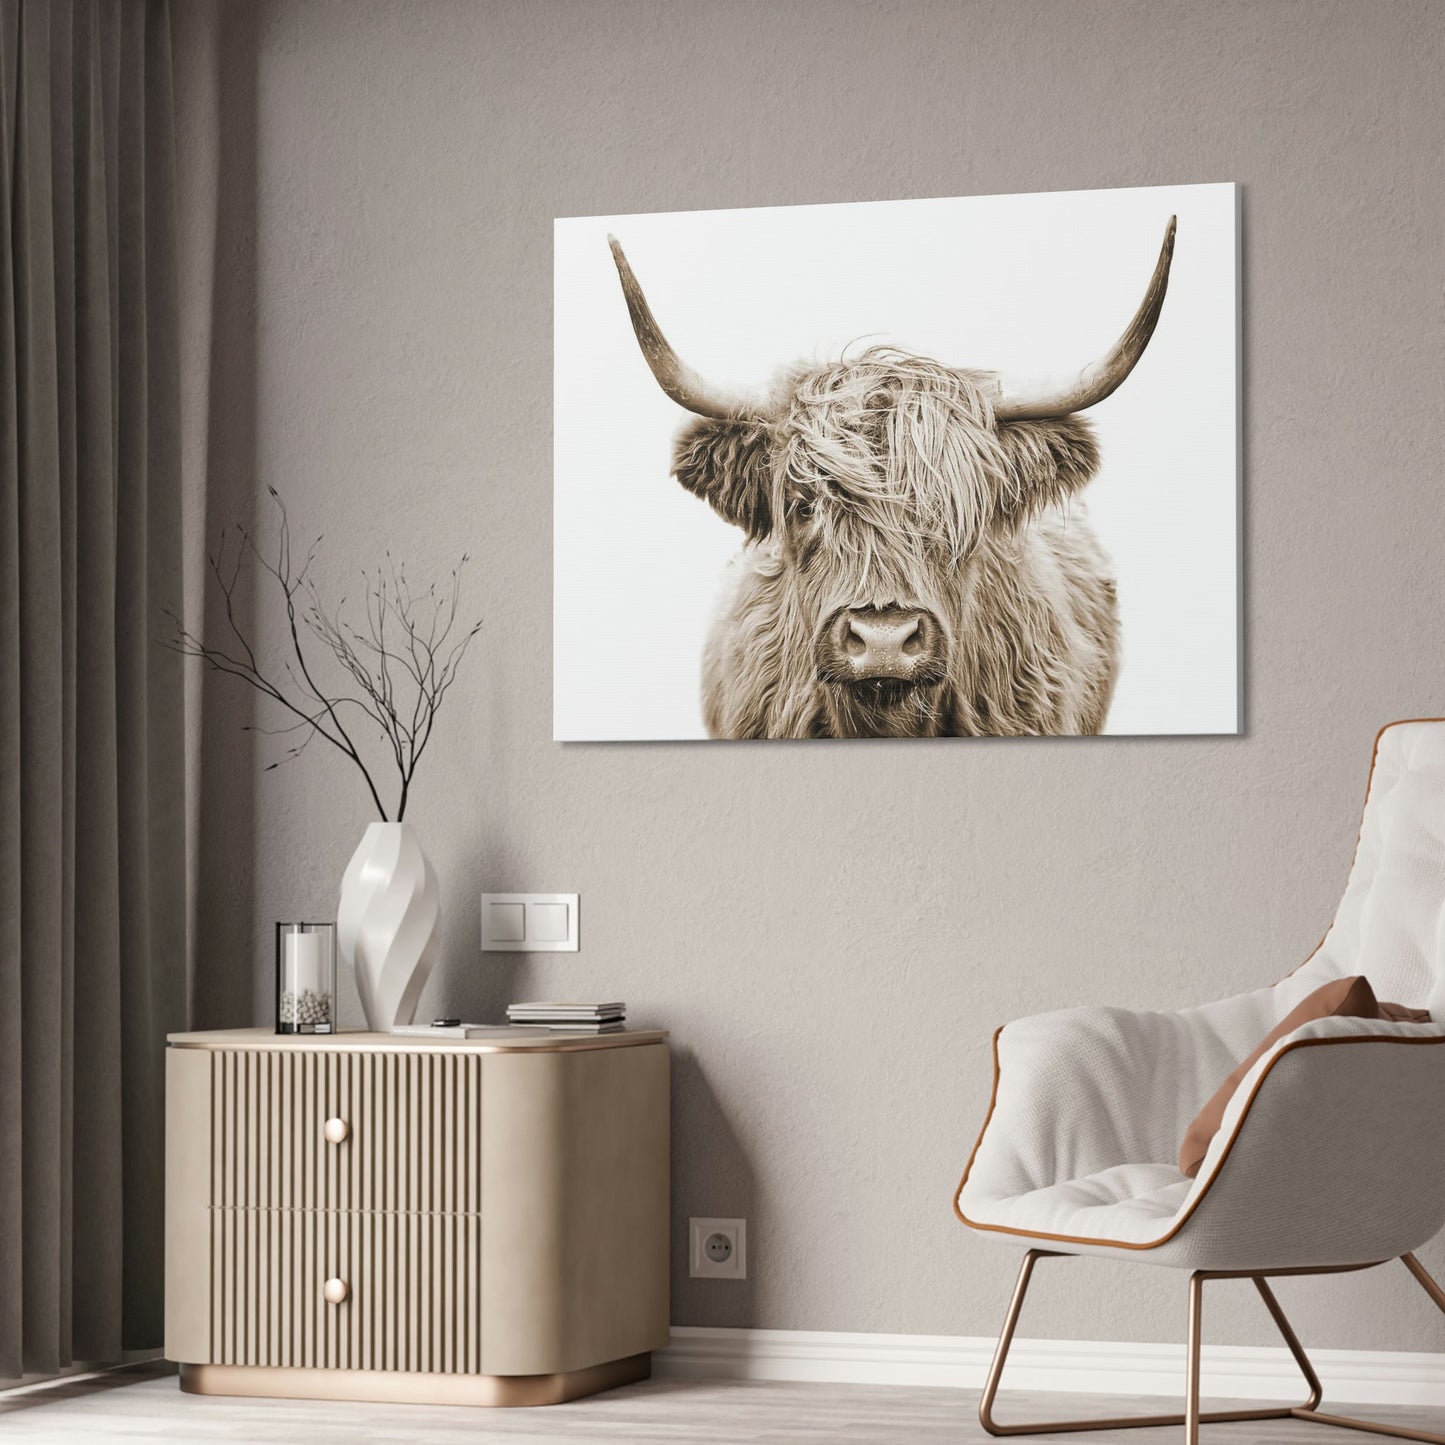 HIghland Cow | Horned Cattle | Wall Art — Pixoram